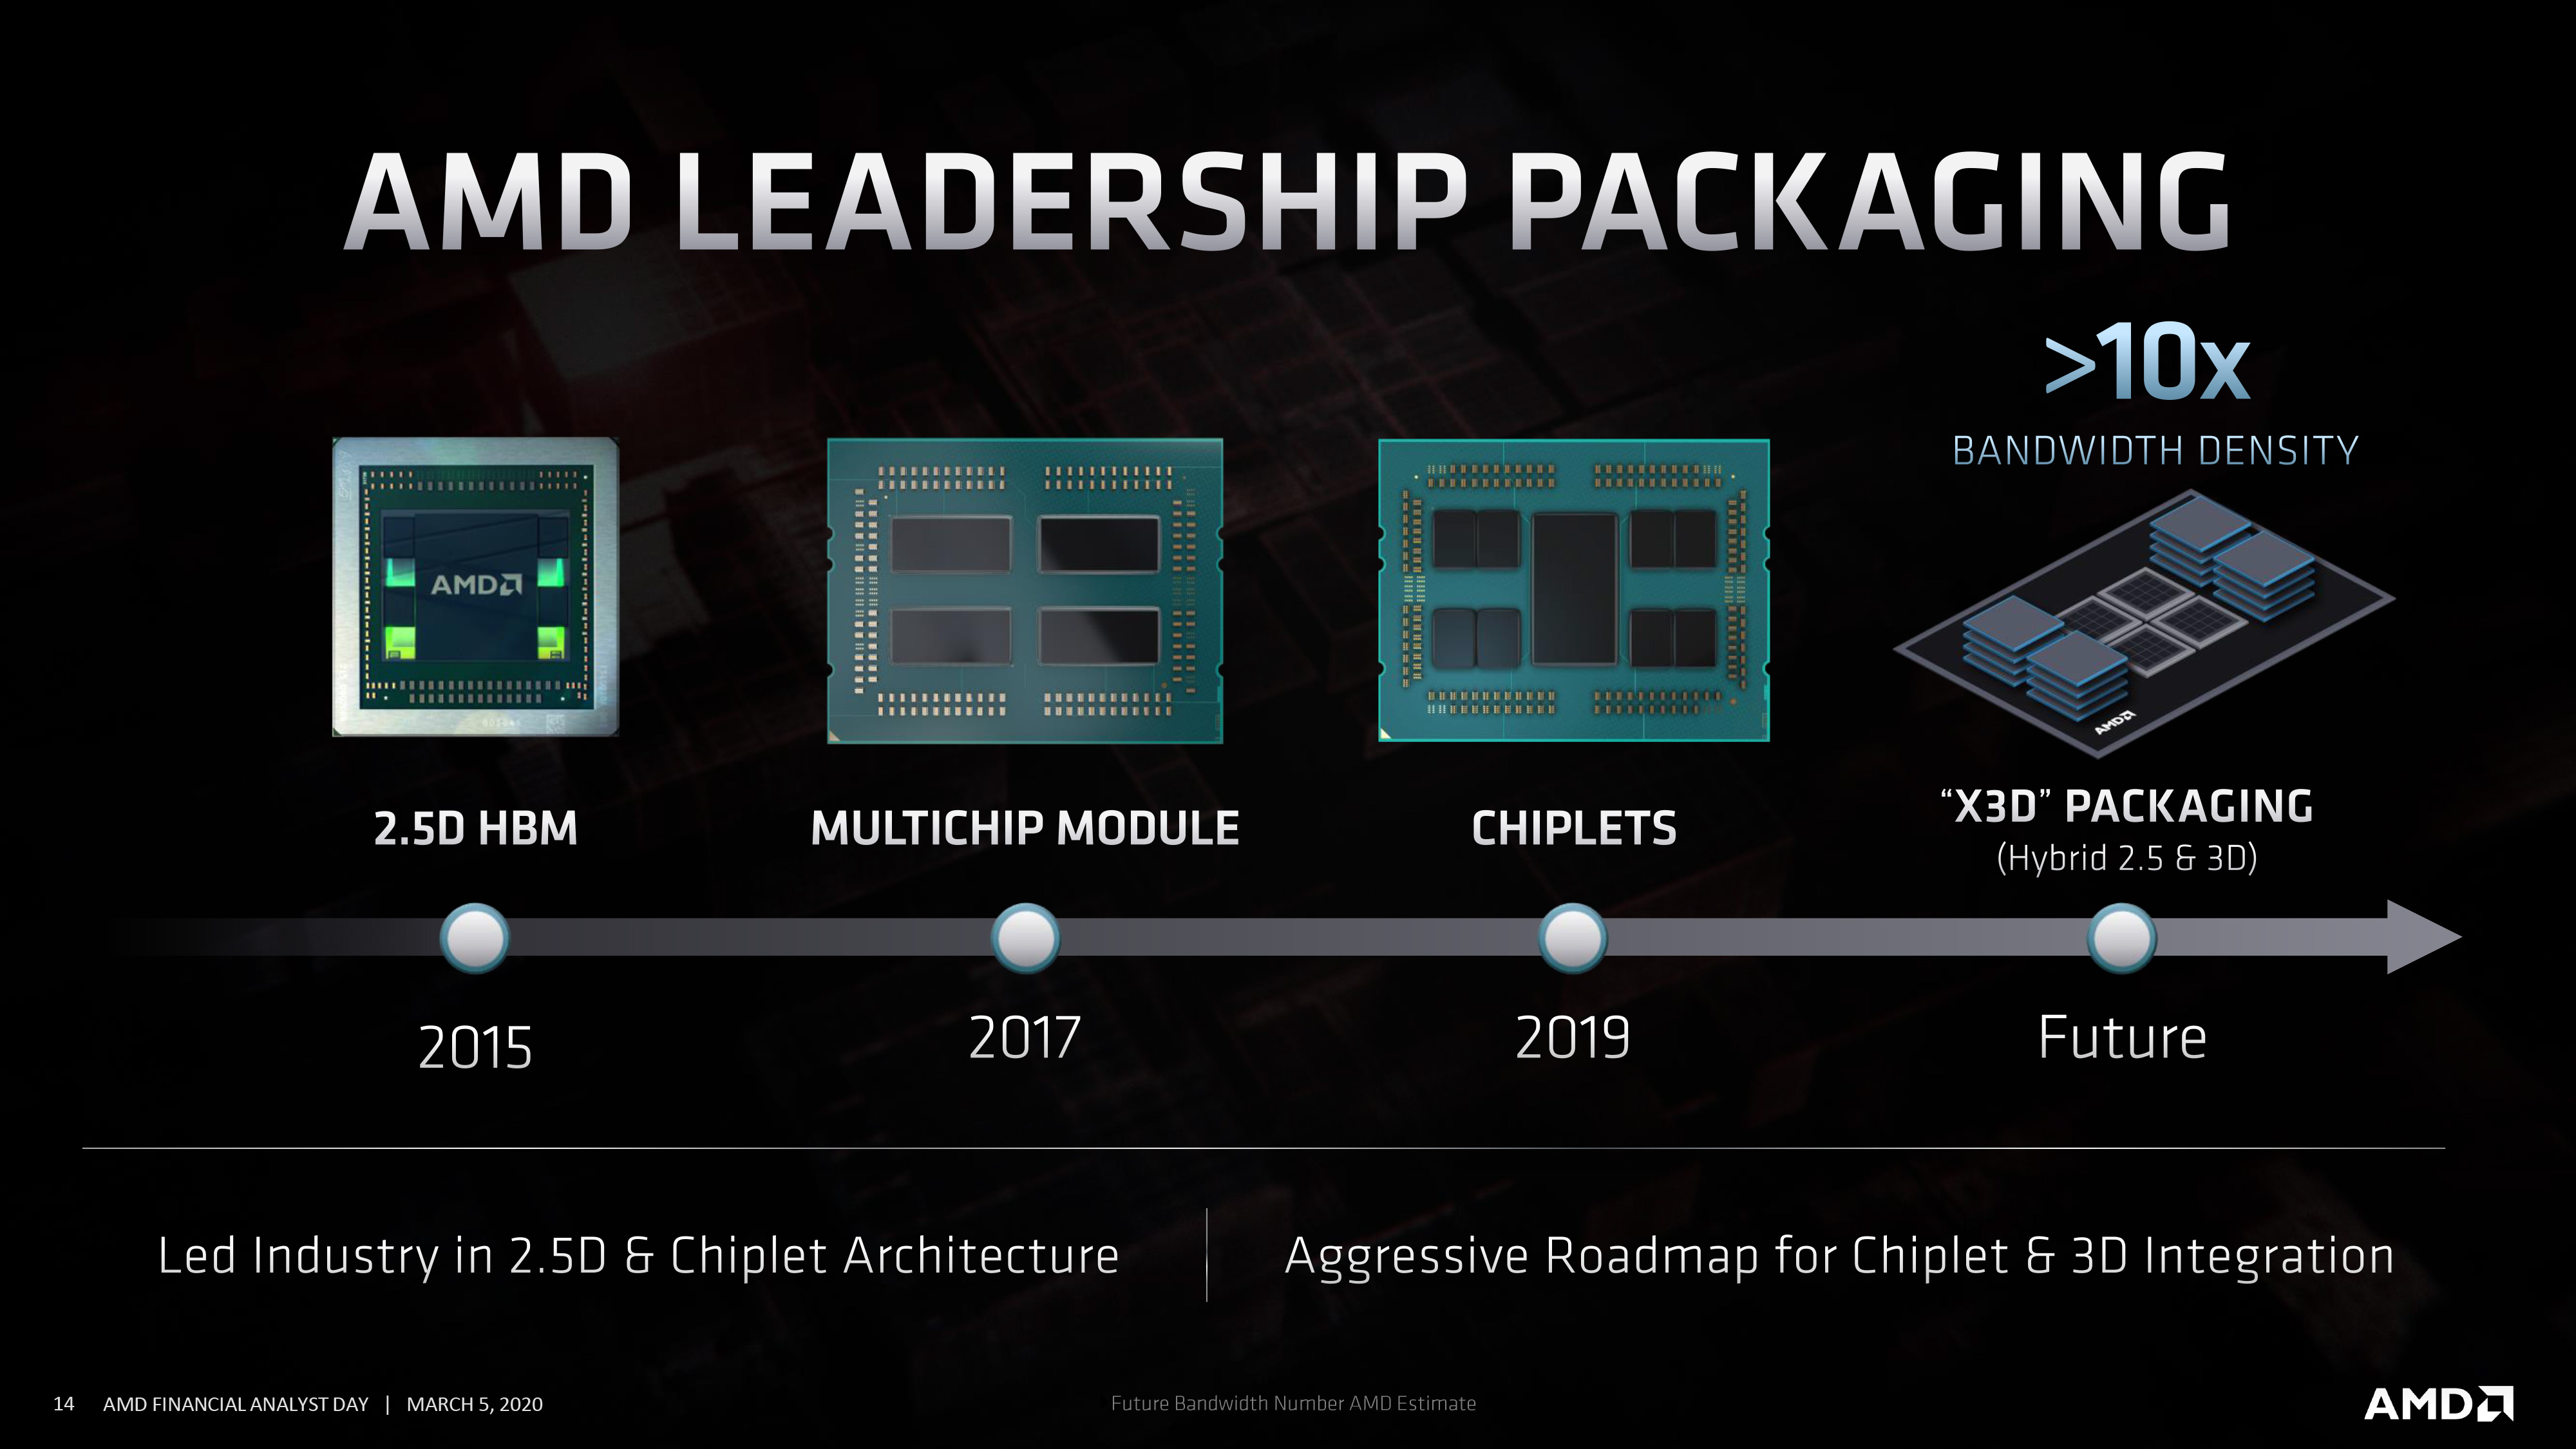 Công nghệ 3D V-Cache xếp chồng của AMD đã thu hút được sự quan tâm của cả ngành công nghệ. Bạn là một người yêu thích sáng tạo và công nghệ? Hãy tới với chúng tôi để khám phá sức mạnh của công nghệ APU mới nhất này và đồng hành cùng AMD trên con đường tạo nên những sản phẩm công nghệ đột phá.